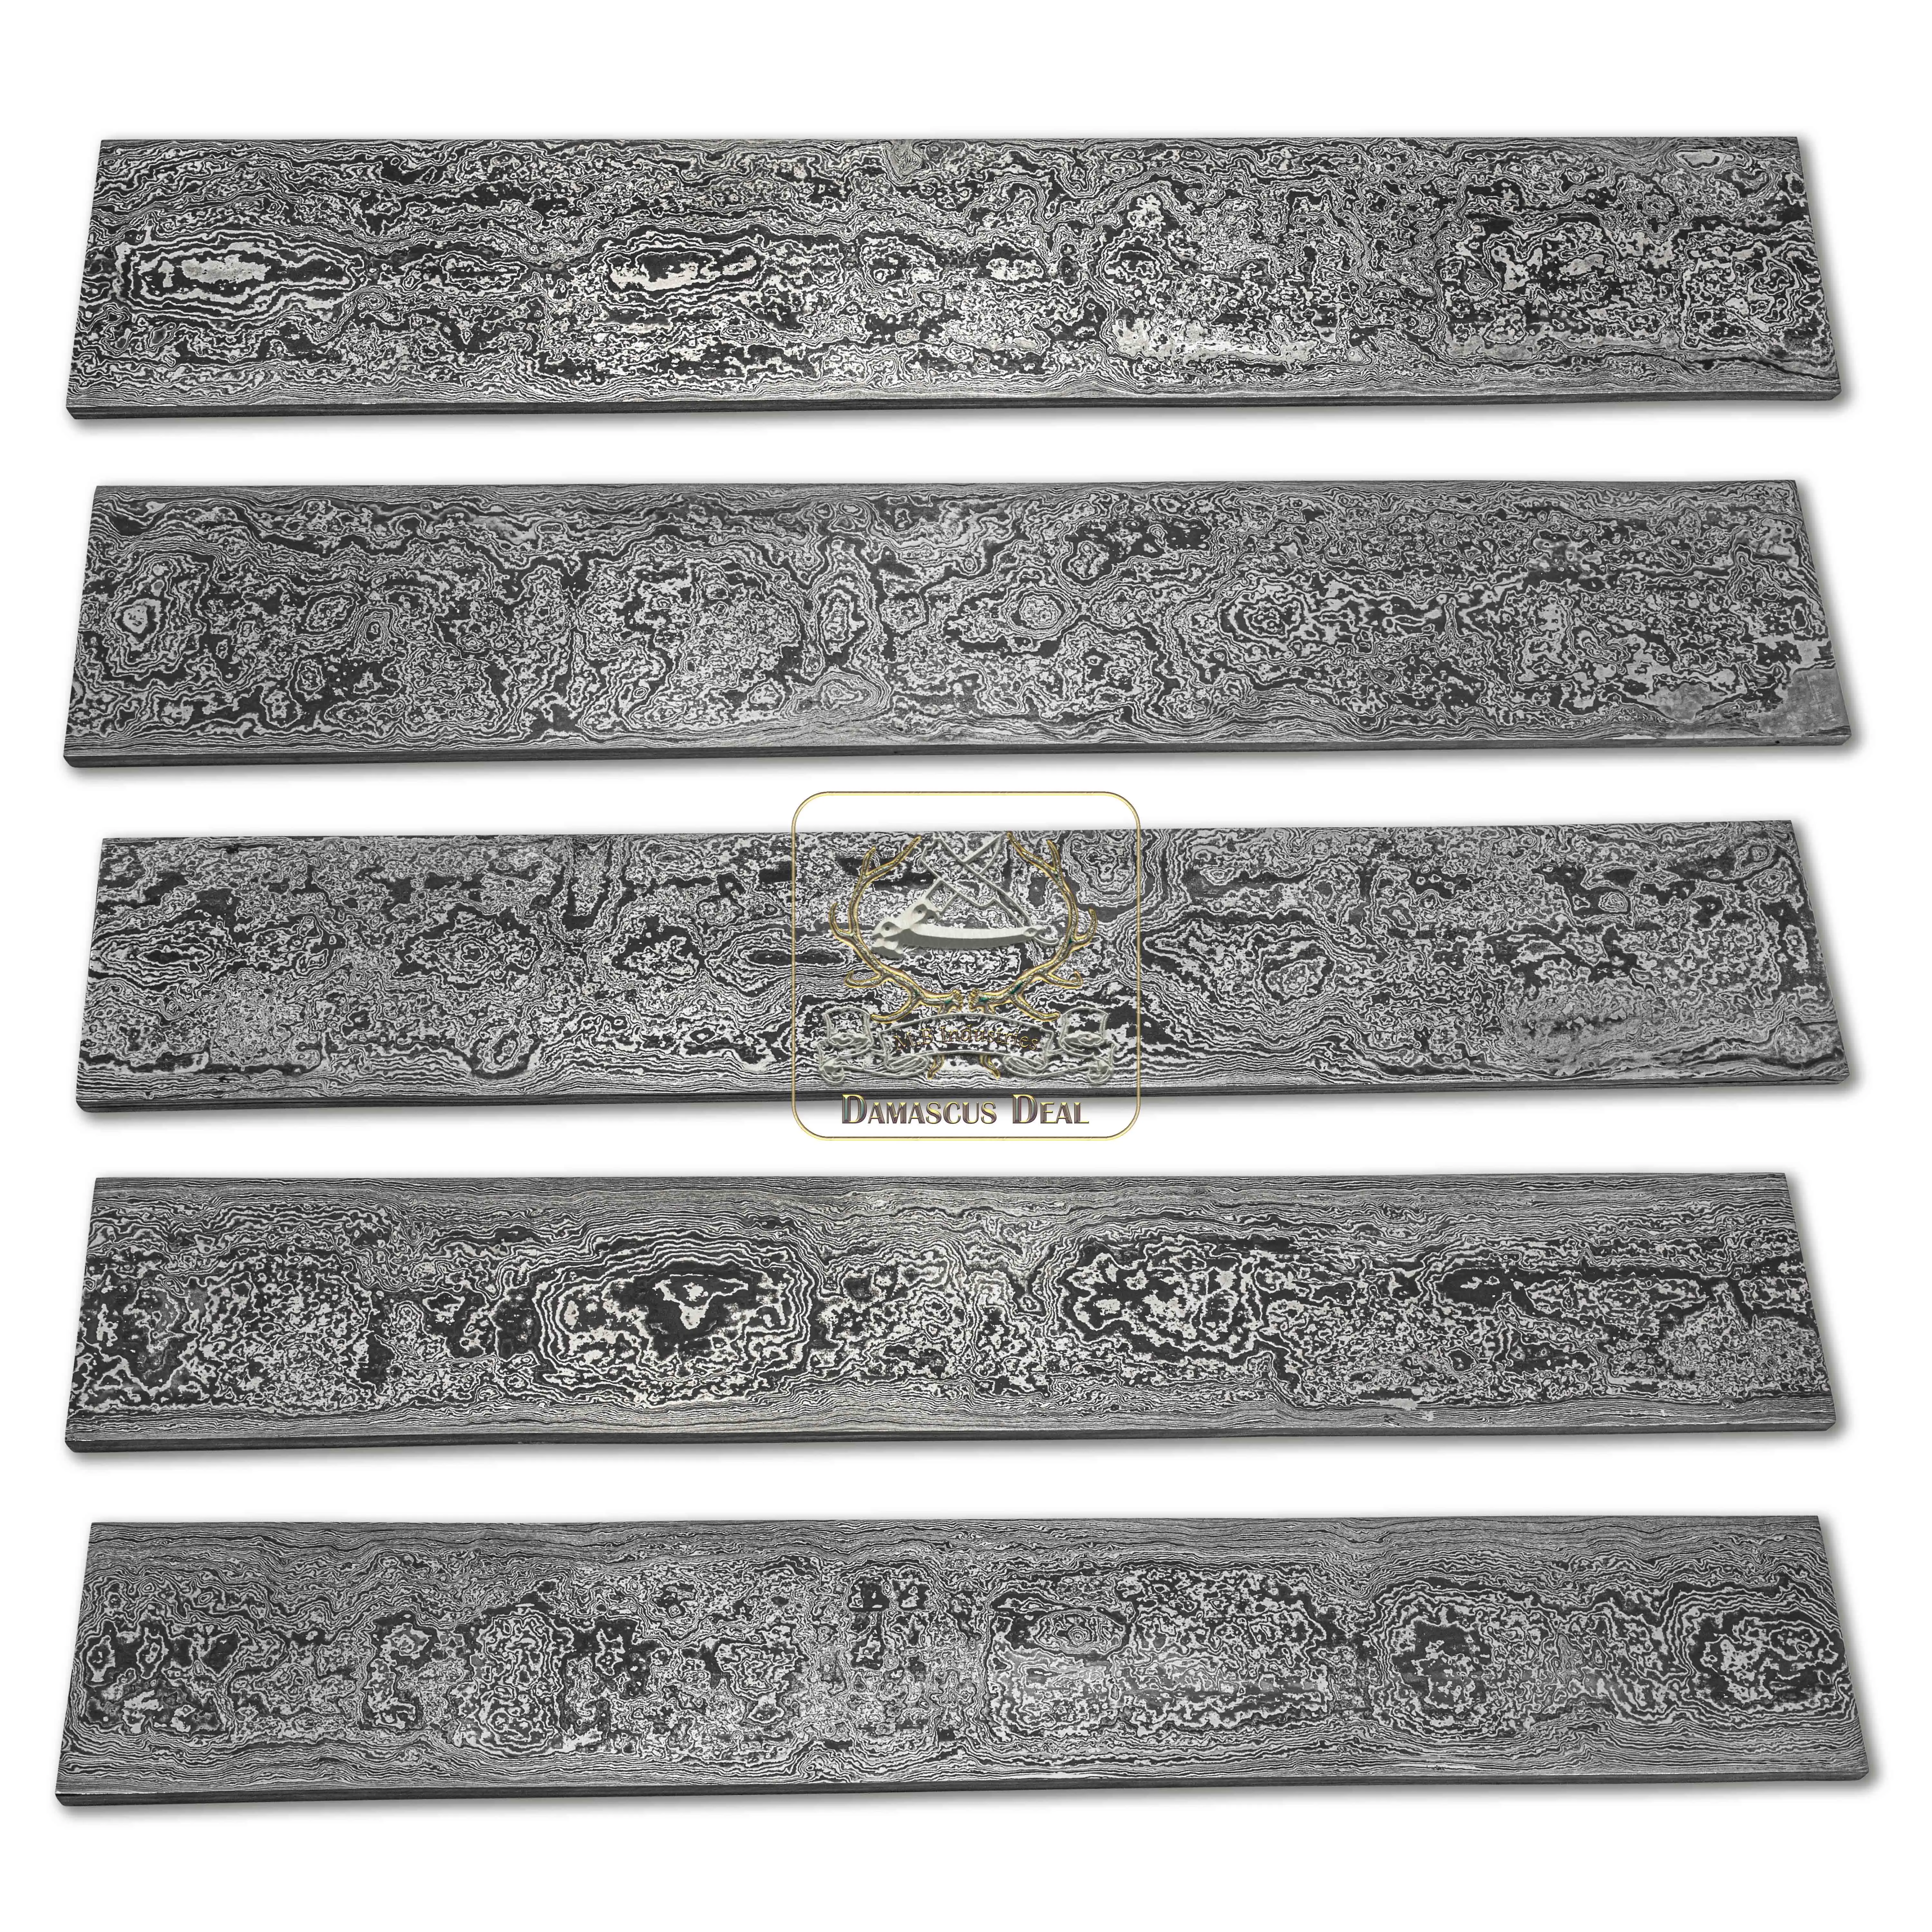 Damascus Steel Billet Random Pattern DD-Random-504 for Knife Making Hand Forged Carbon Steel Hardness 58-62 HRC Billet